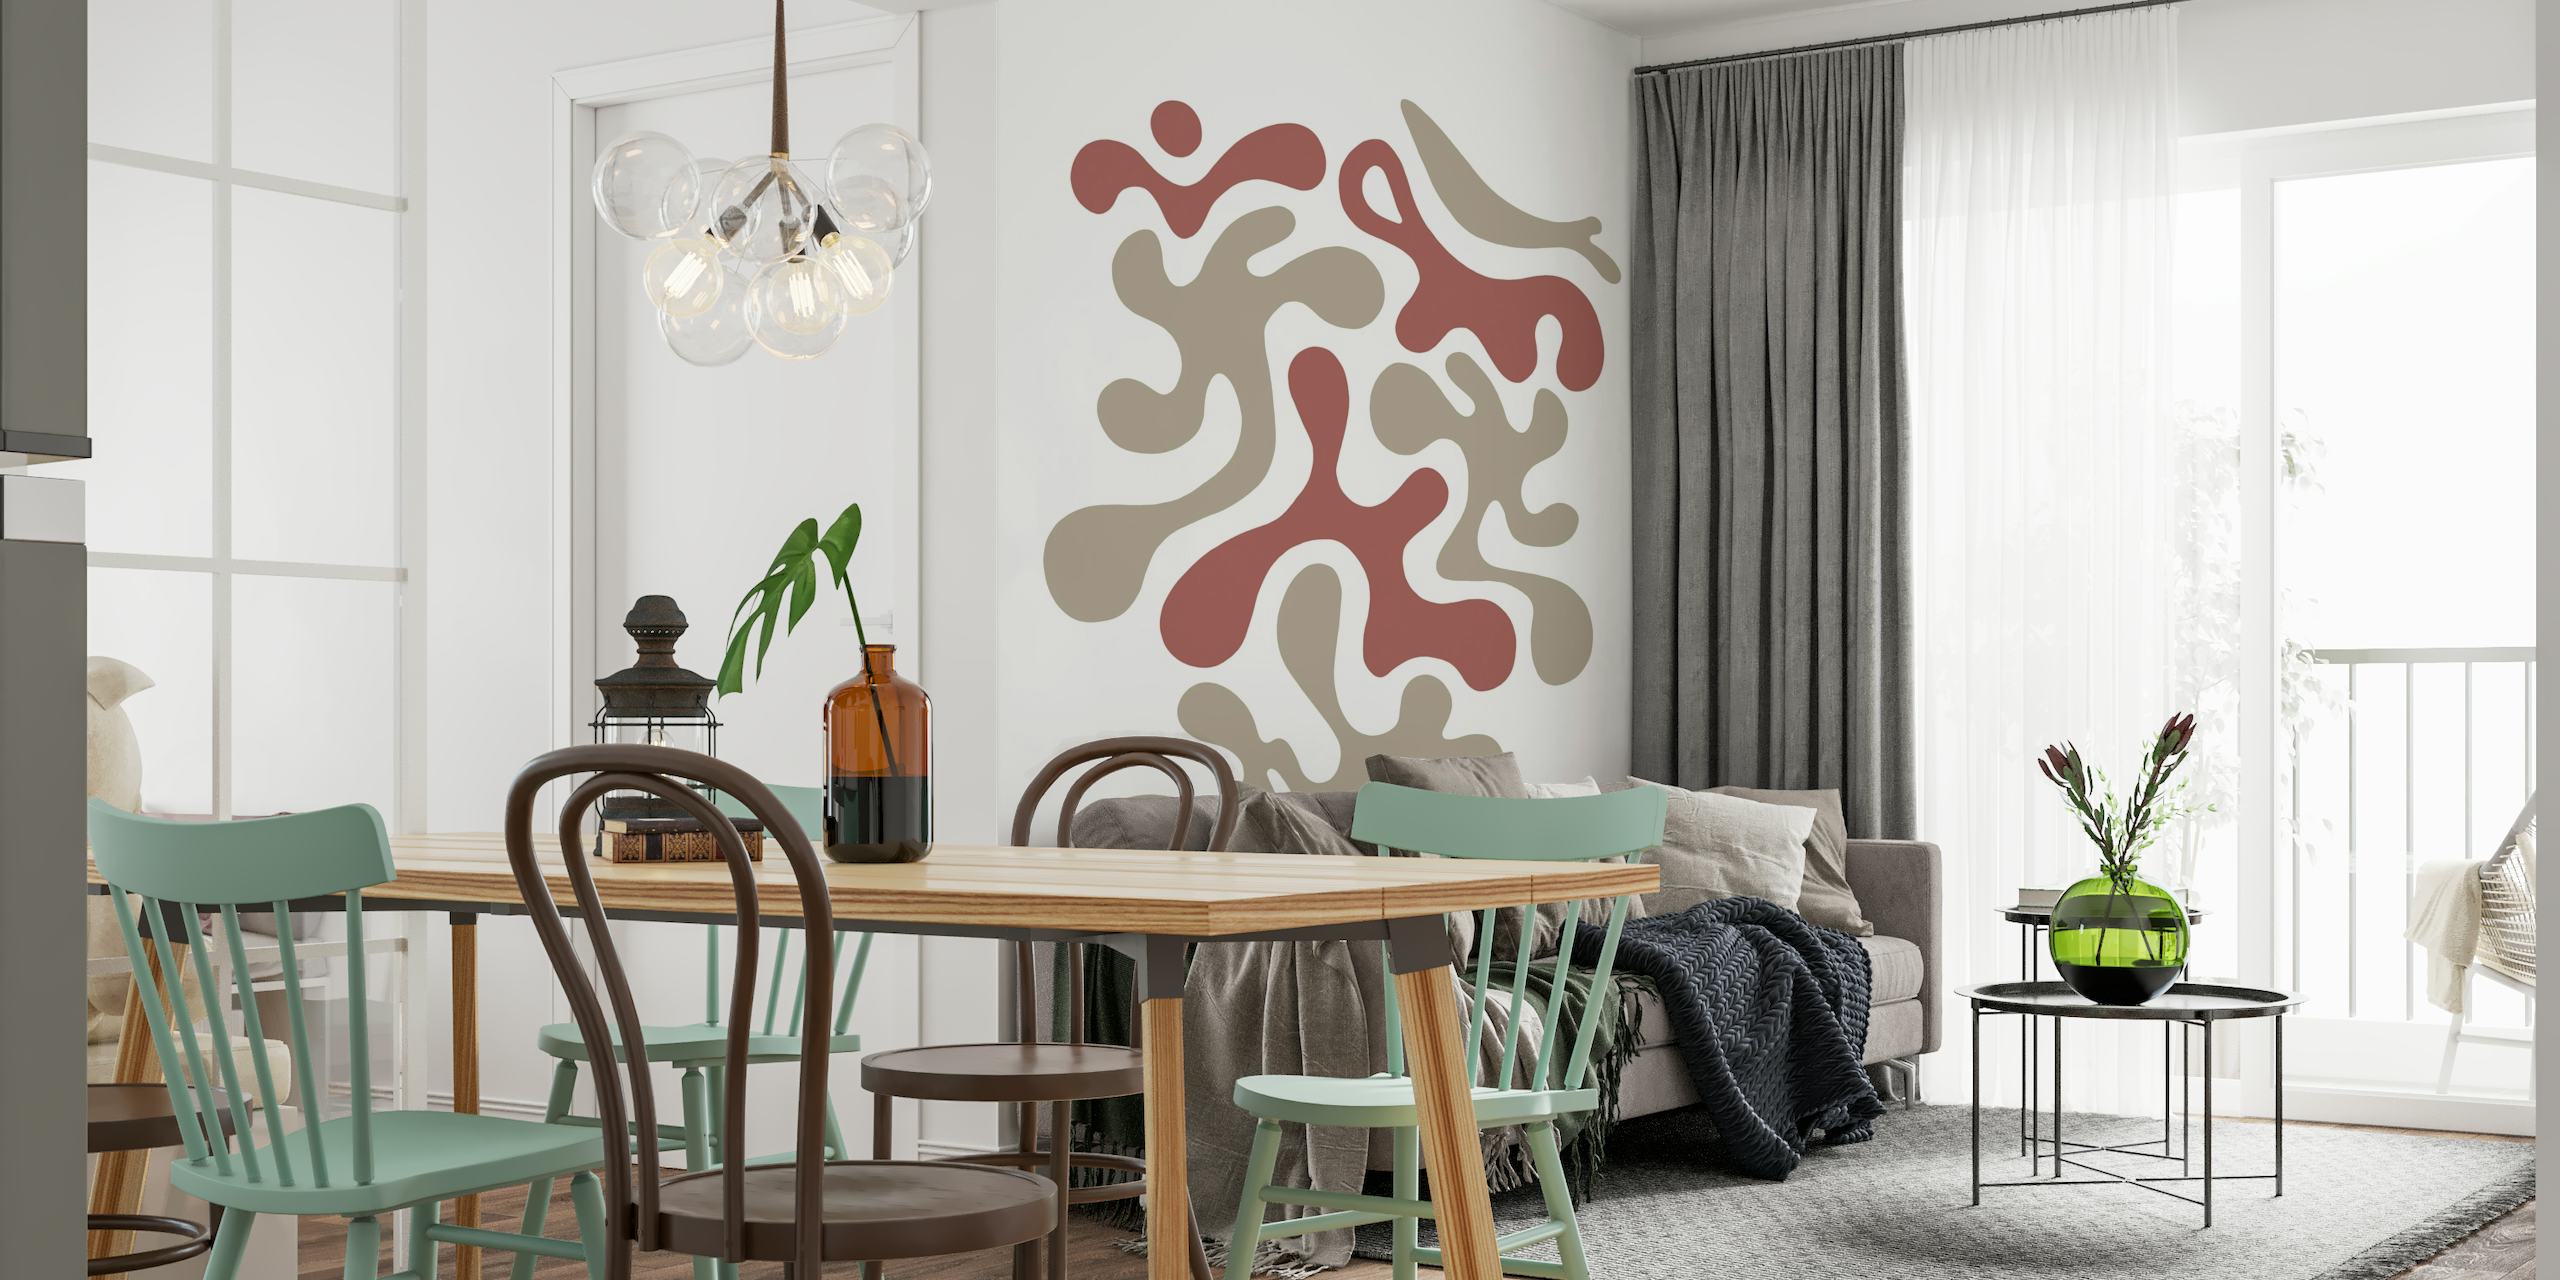 Abstraktes Wandbild mit organischen Formen in Terrakotta und gedämpften Erdtönen